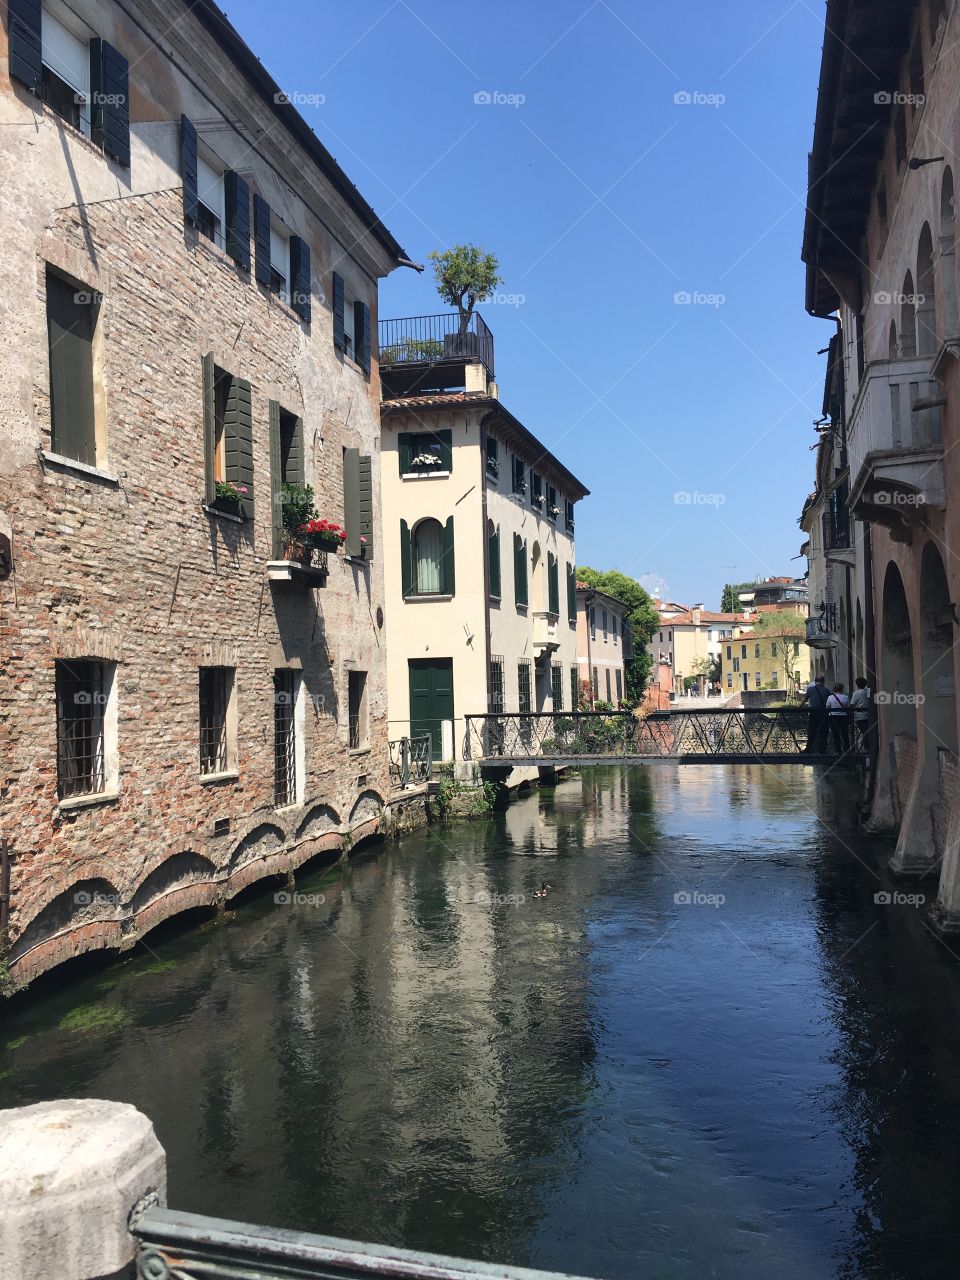 River in Treviso 